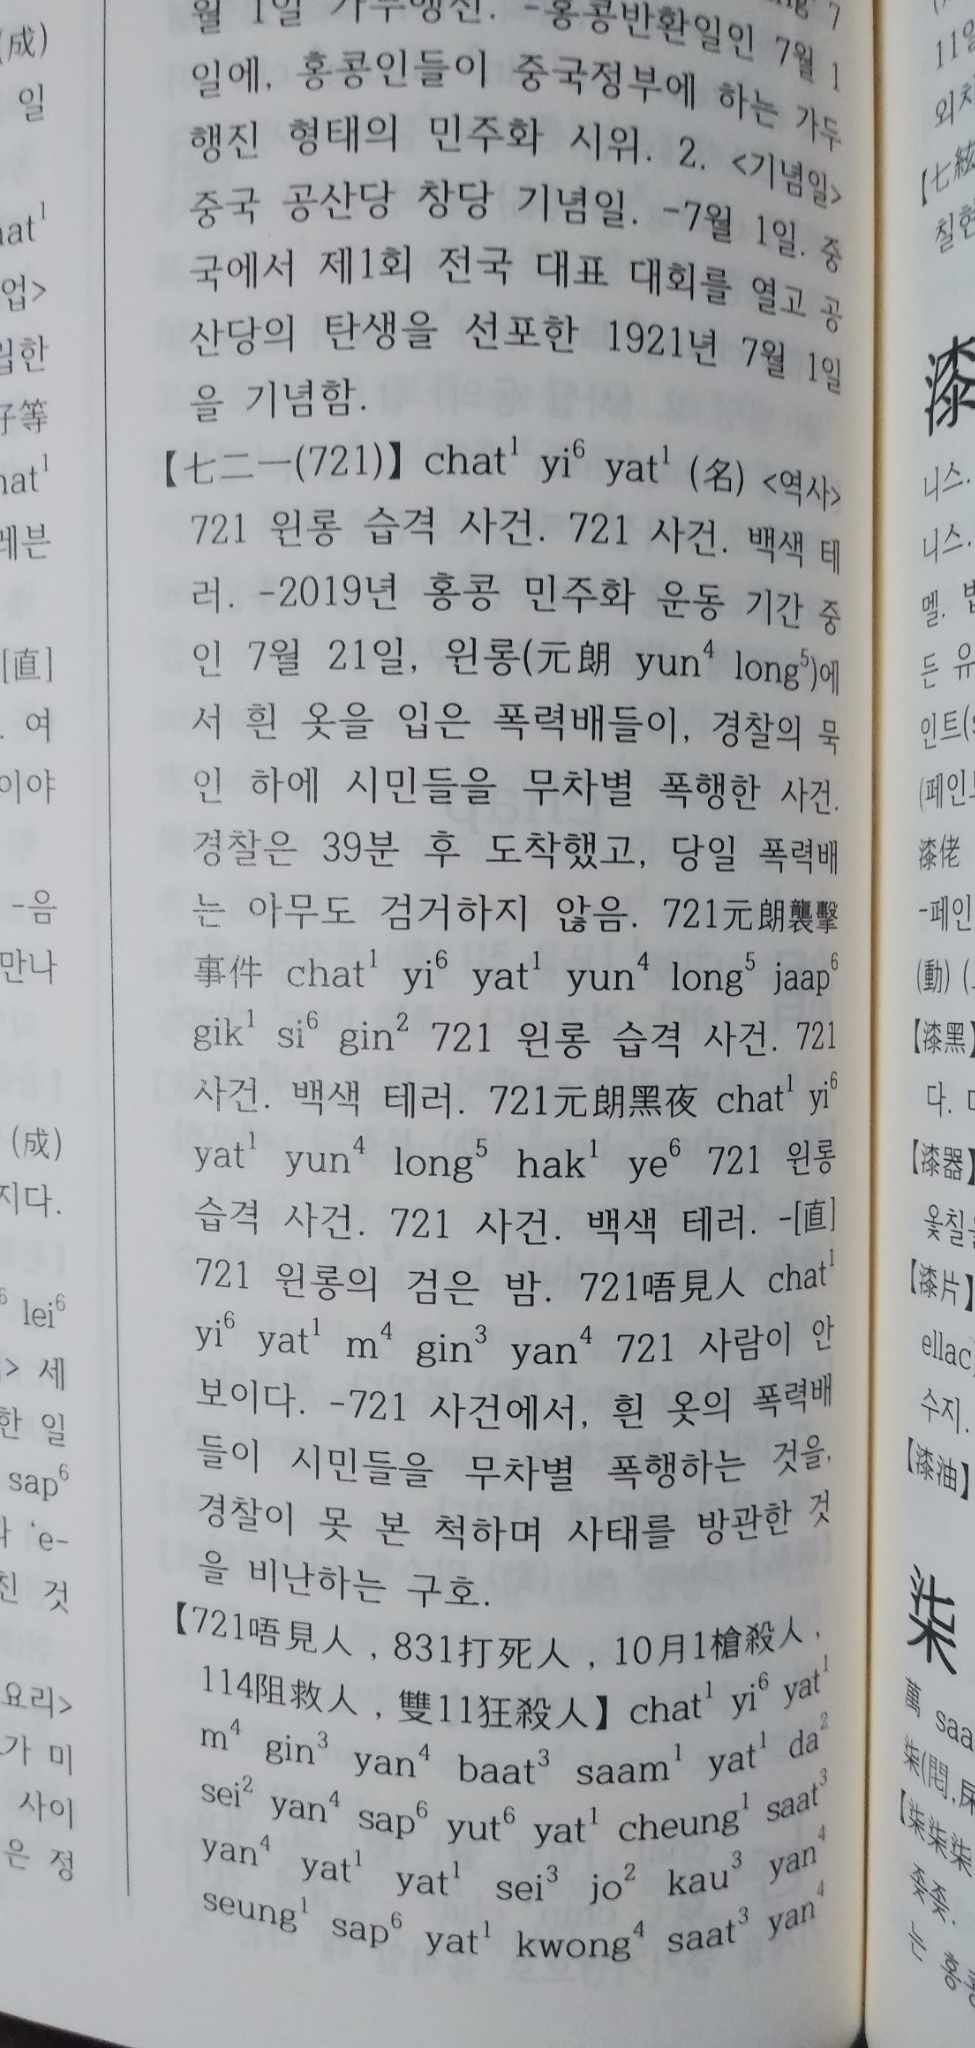 韓國人學粵語覺得最難的地方：一般粵語母語者唔識教人 講話講太快